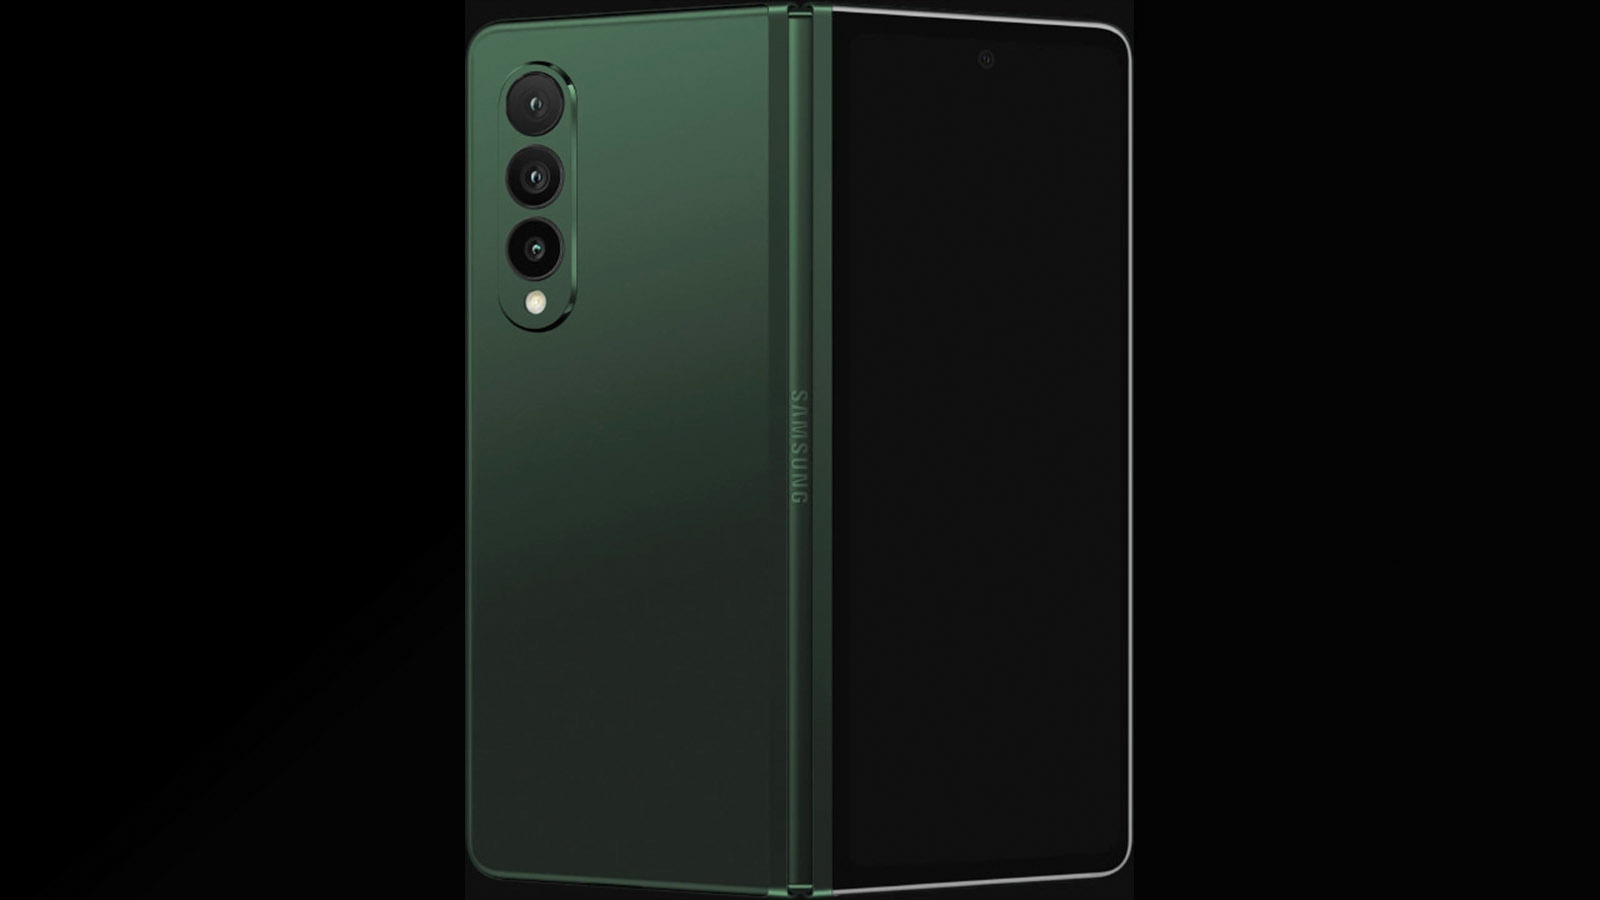 Samsung Fold 3 Green